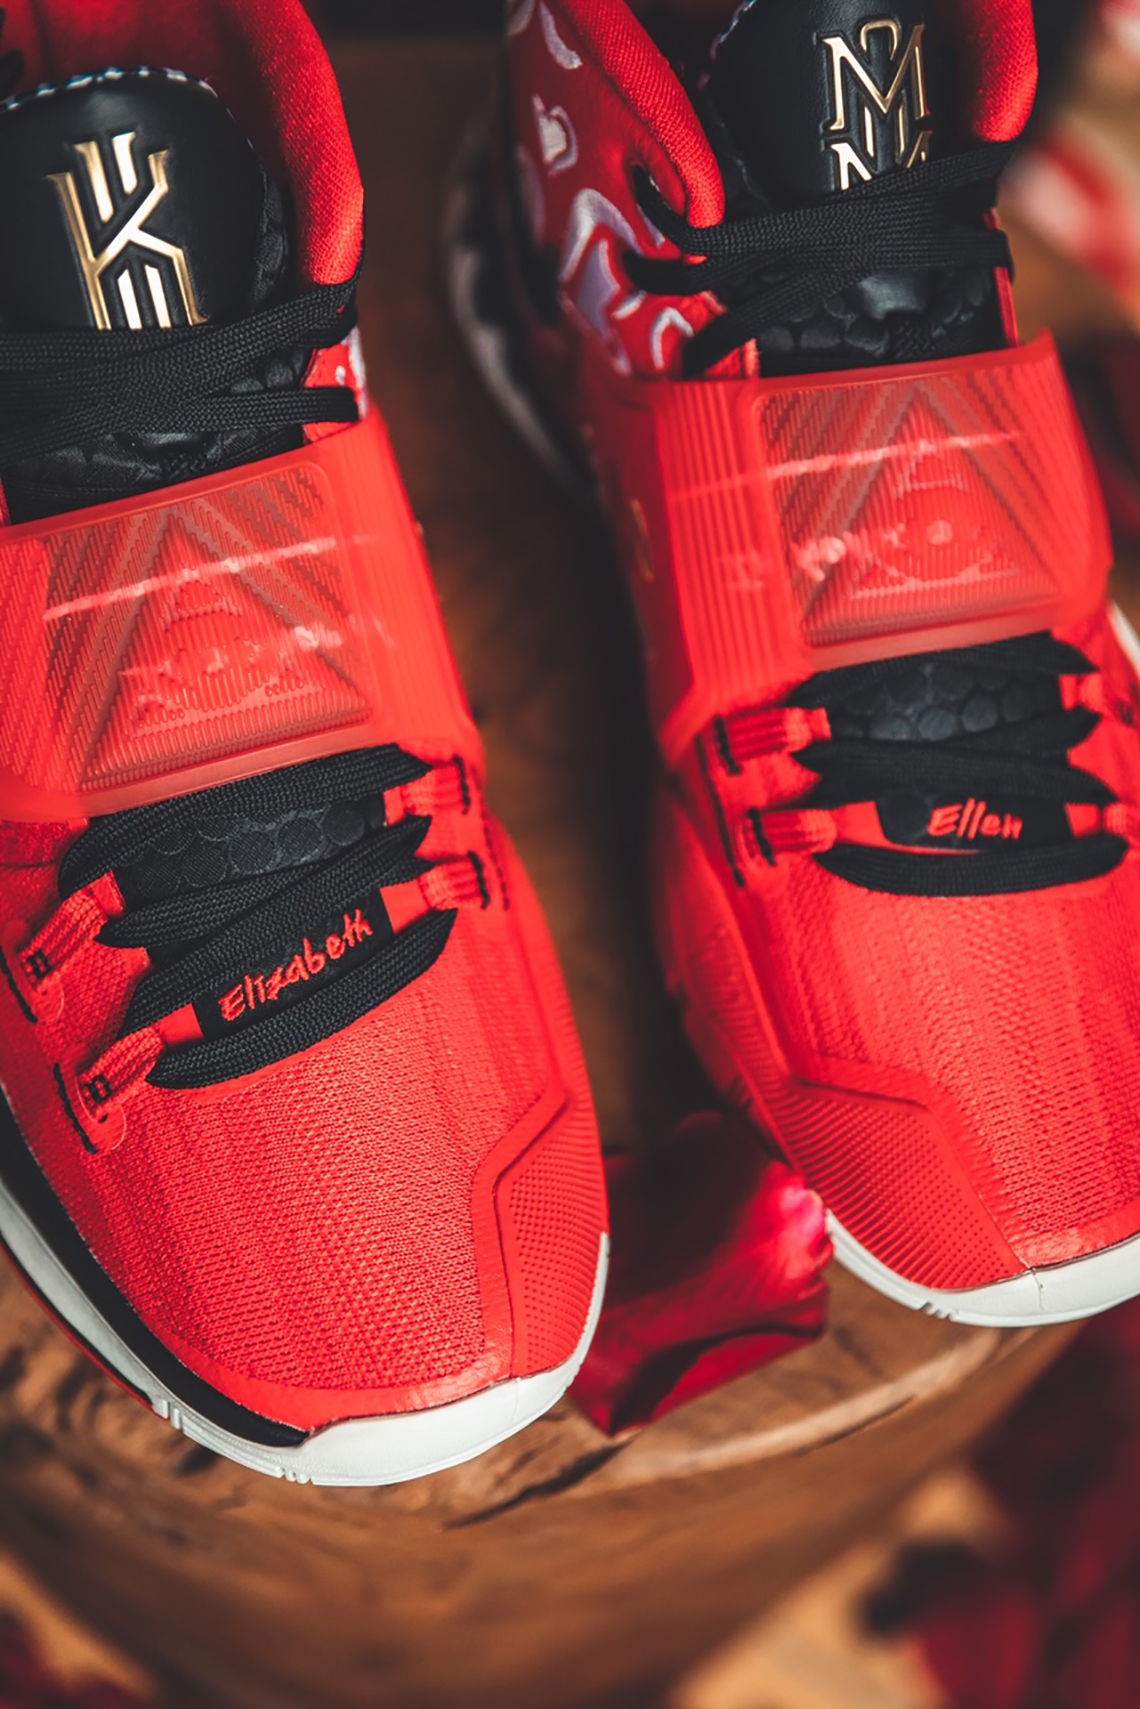  Nike Kyrie 6 “Mom” Red